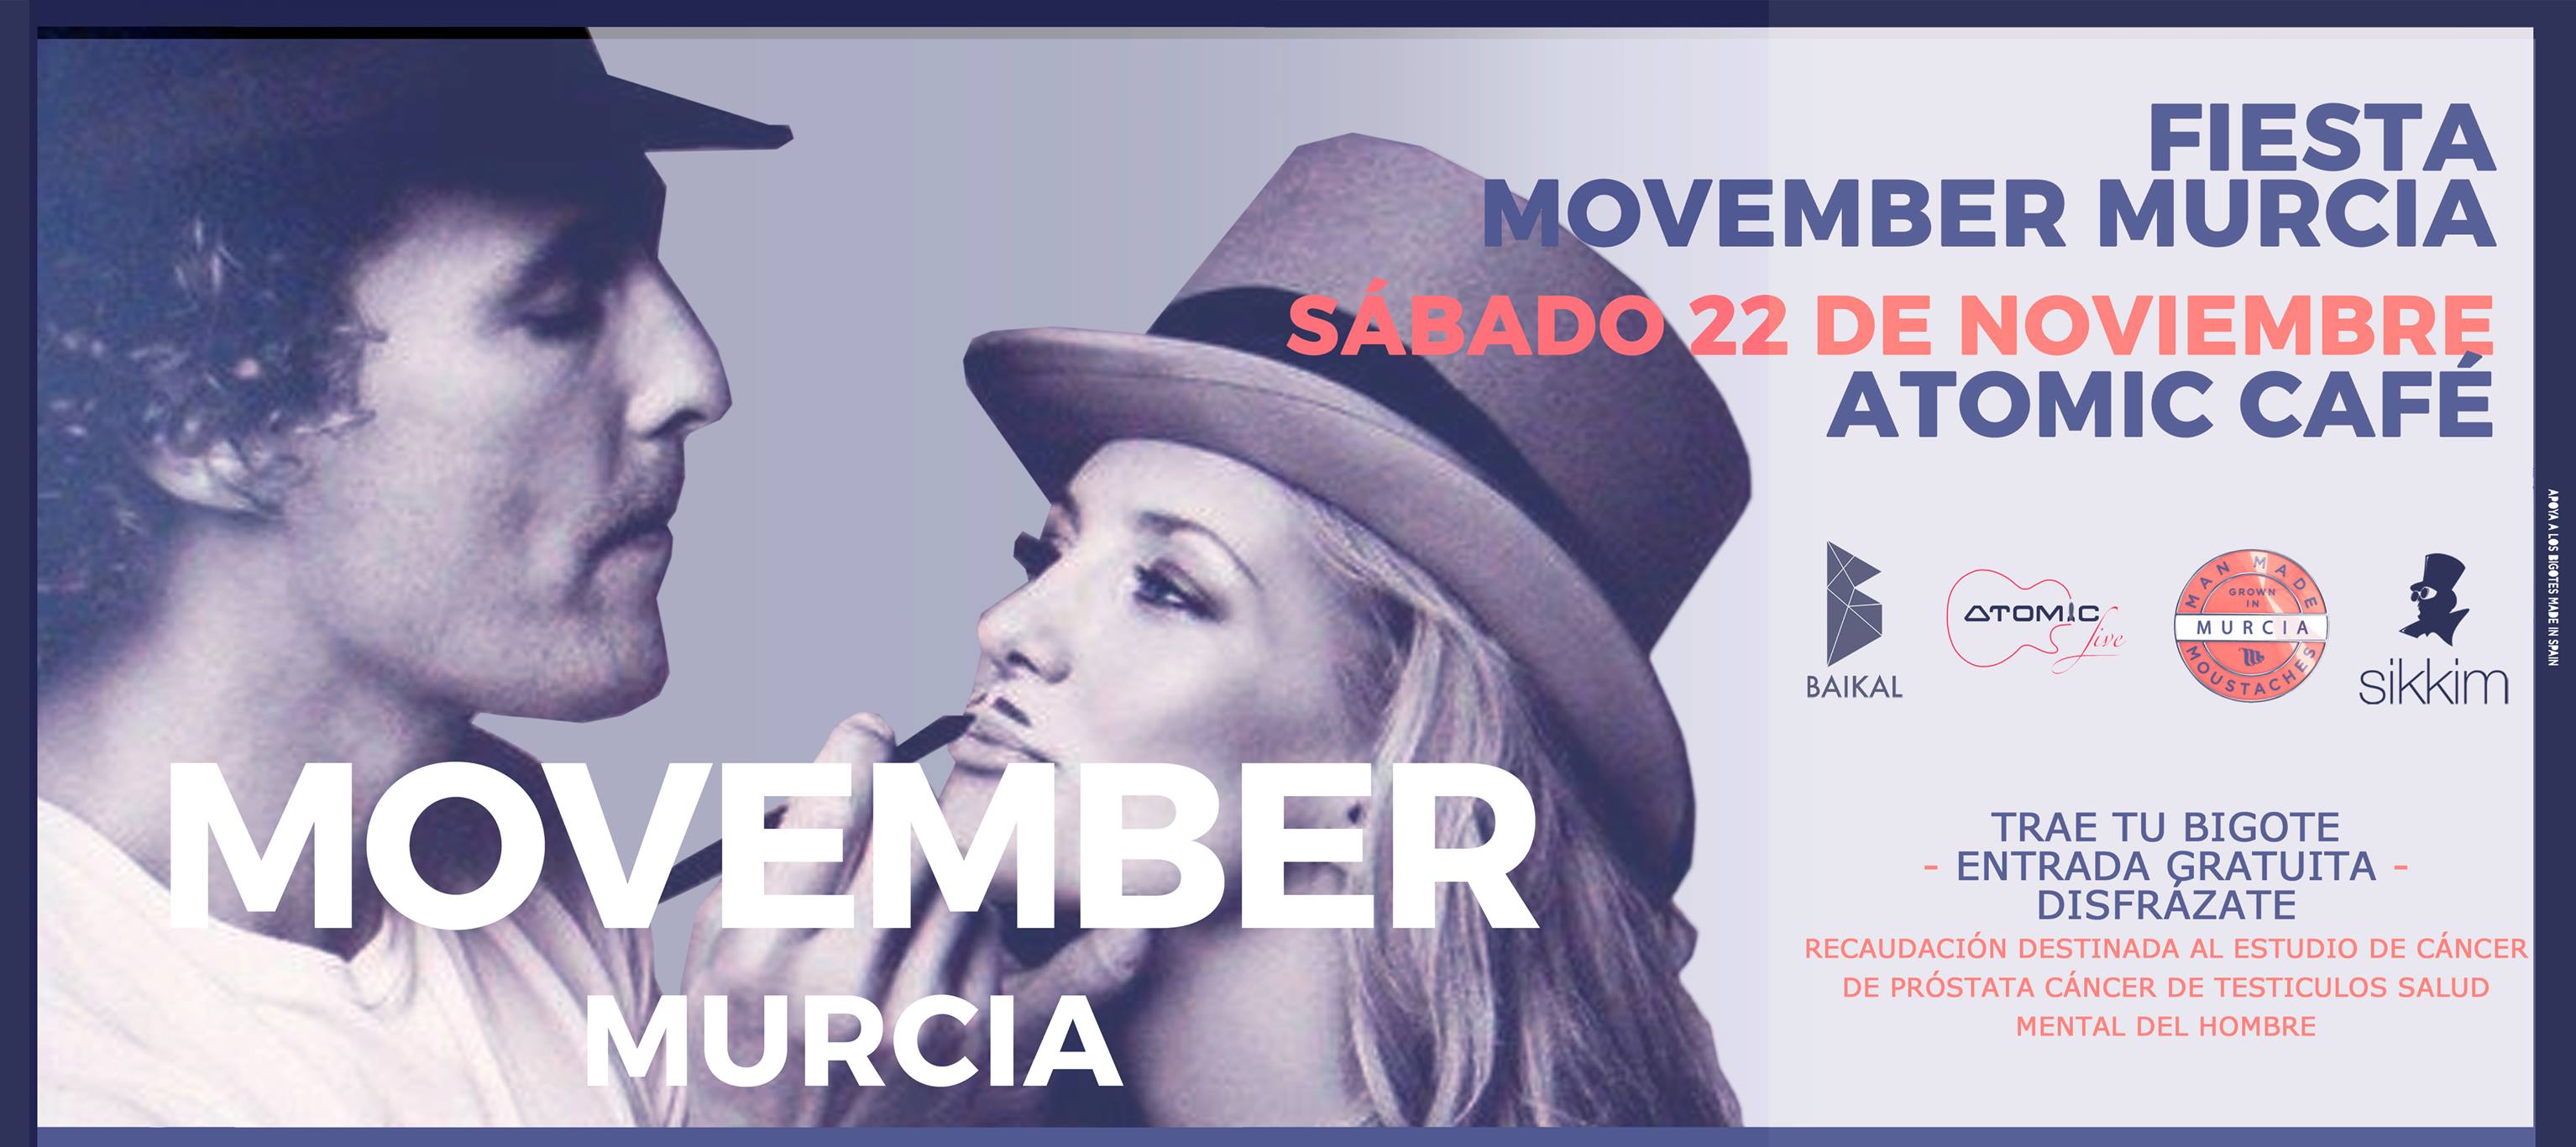 #Murciabigotuda celebra el movimiento Movember en Atomic